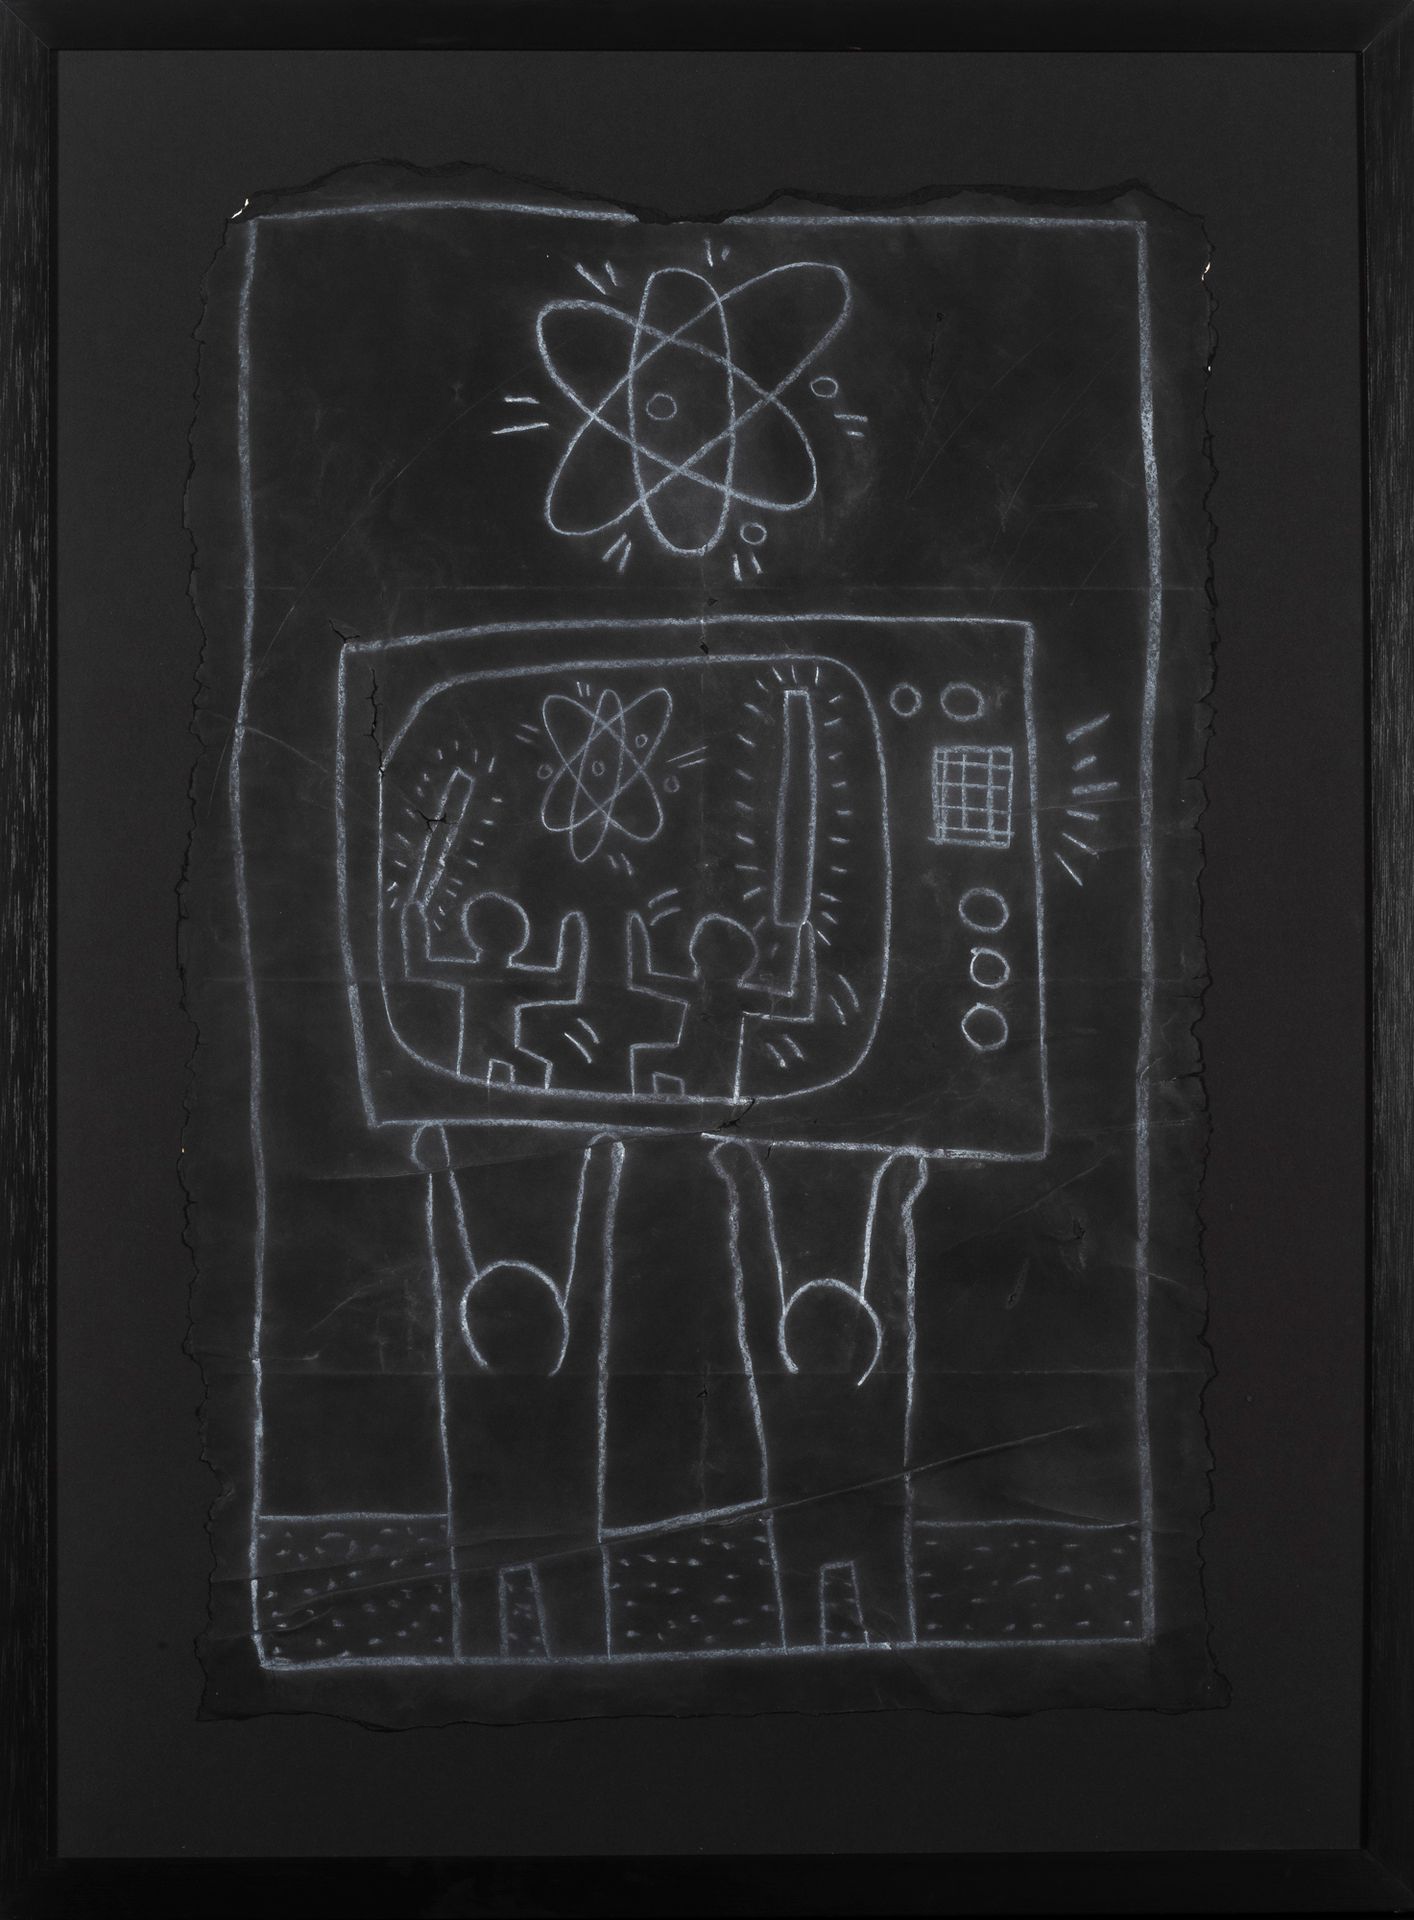 Keith Haring (1958-1990) Subway Drawing
Craie sur papier noir.
Krijt op zwart pa&hellip;